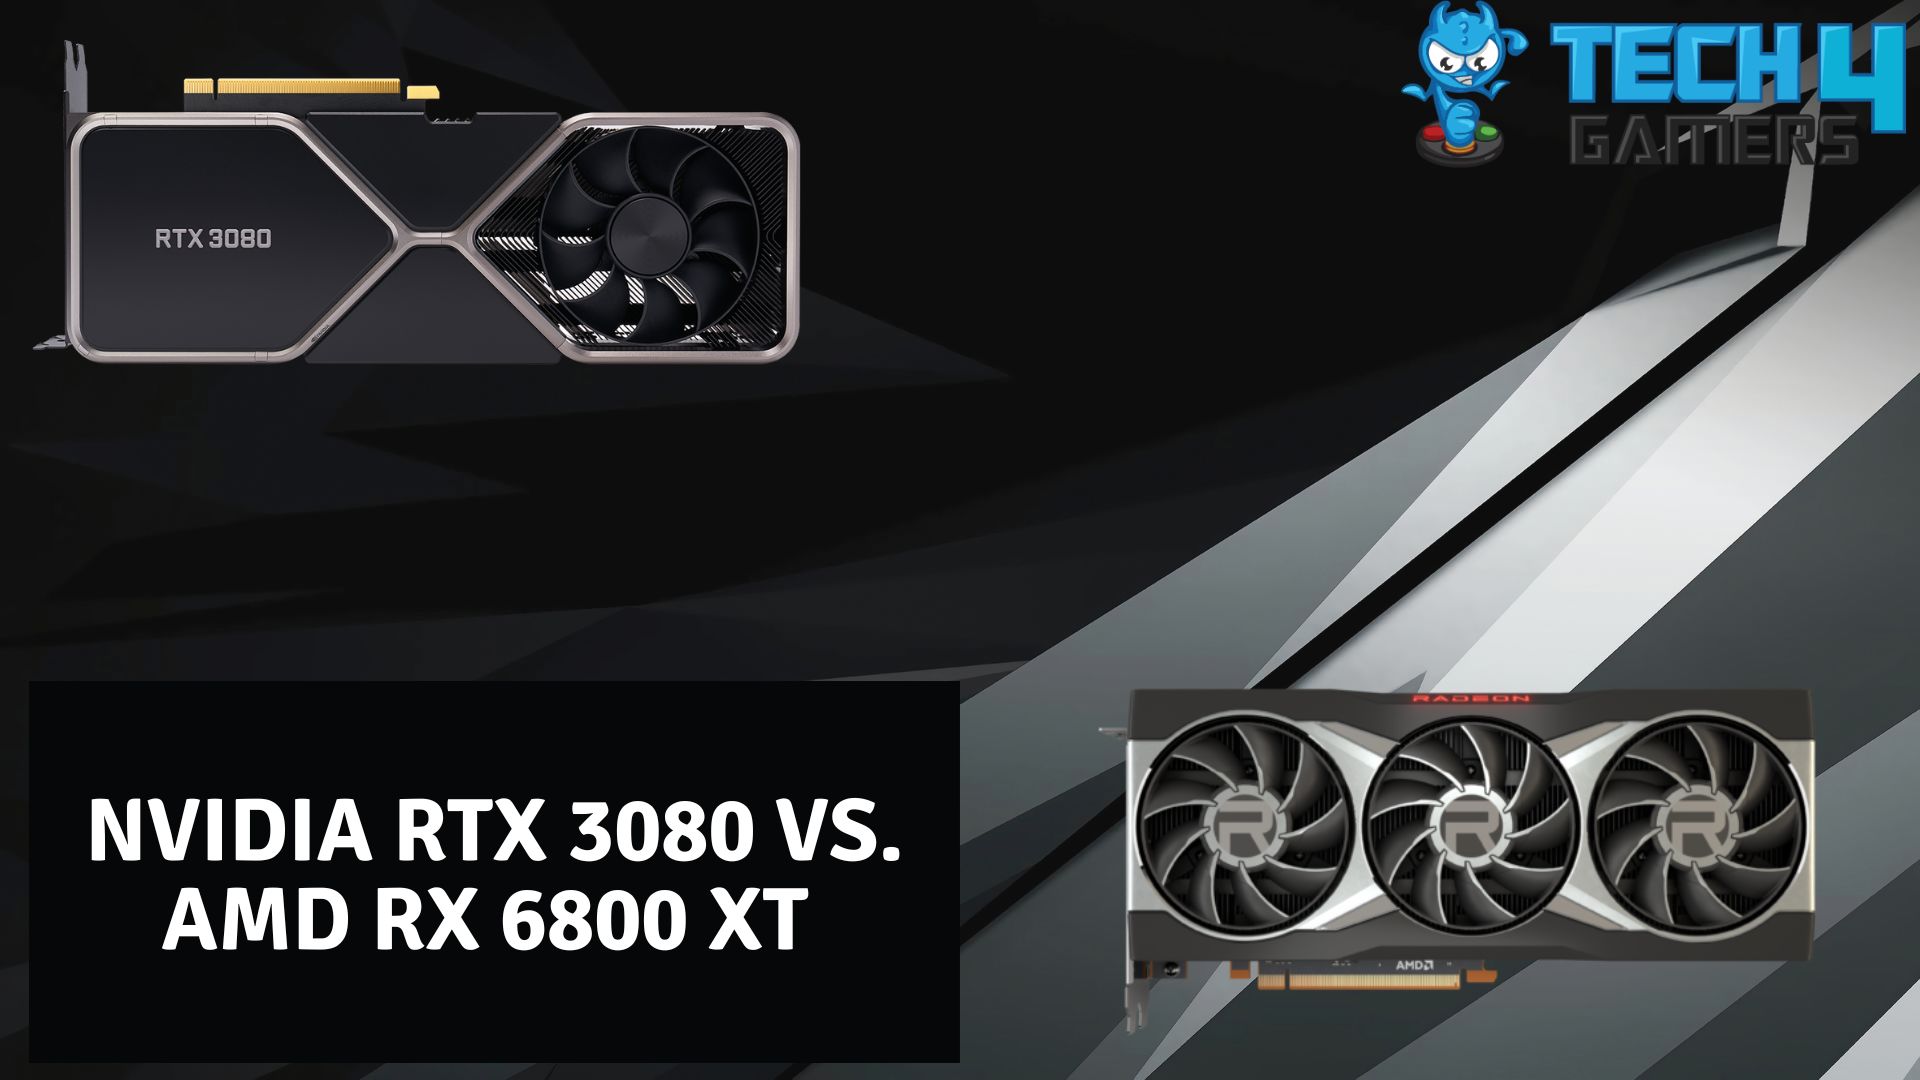 RTX 3060 Ti vs. RTX 3070 vs. RX 6800 vs. RX 6800 XT vs. RTX 3080